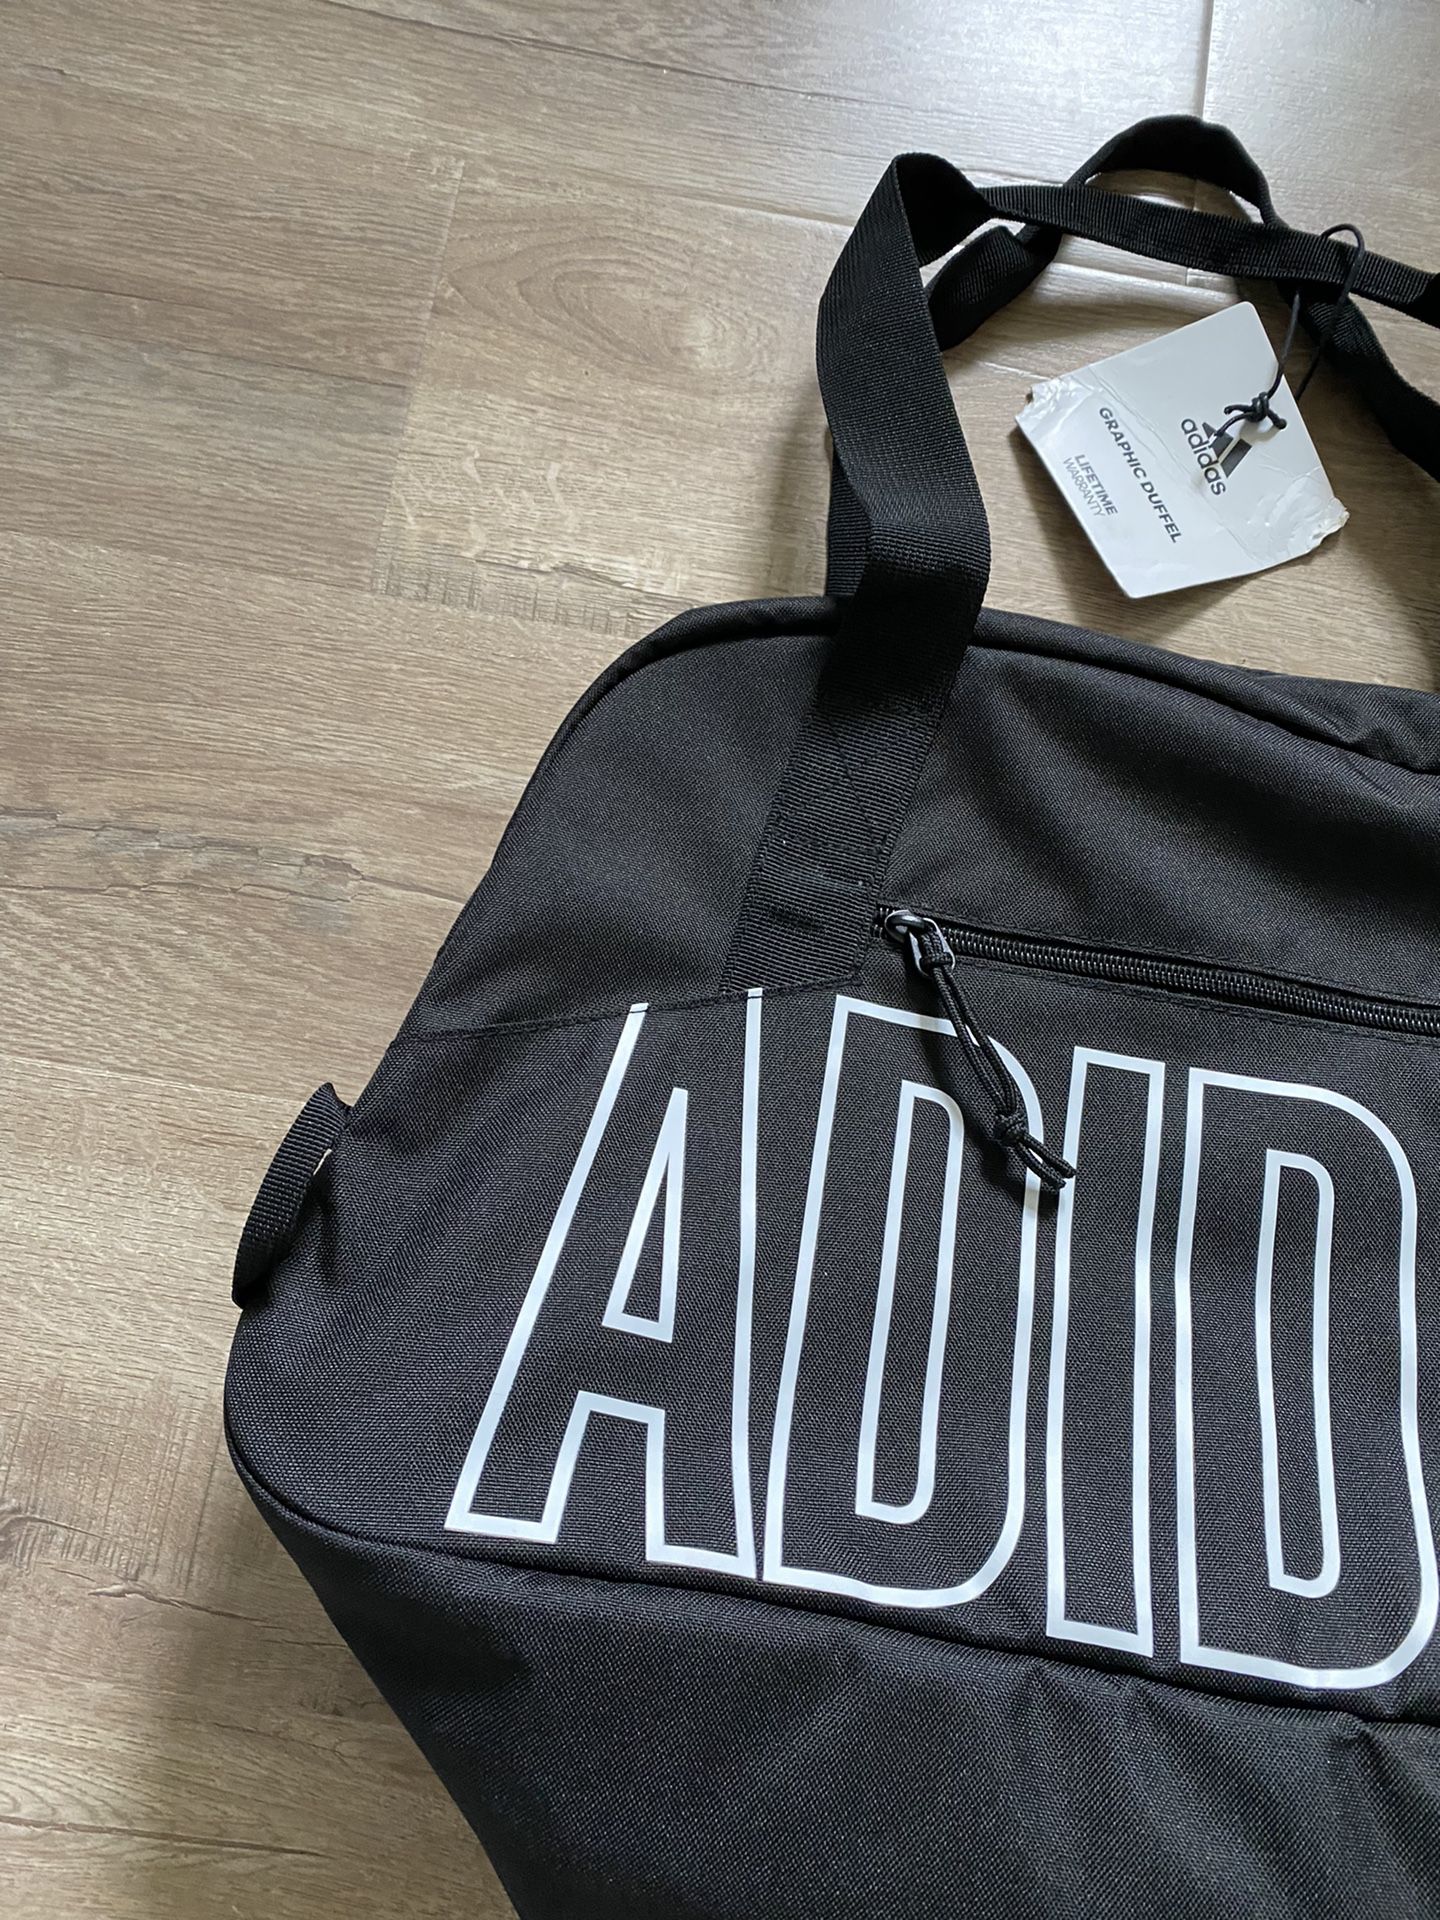 Adidas Duffle Bag / Gym Bag